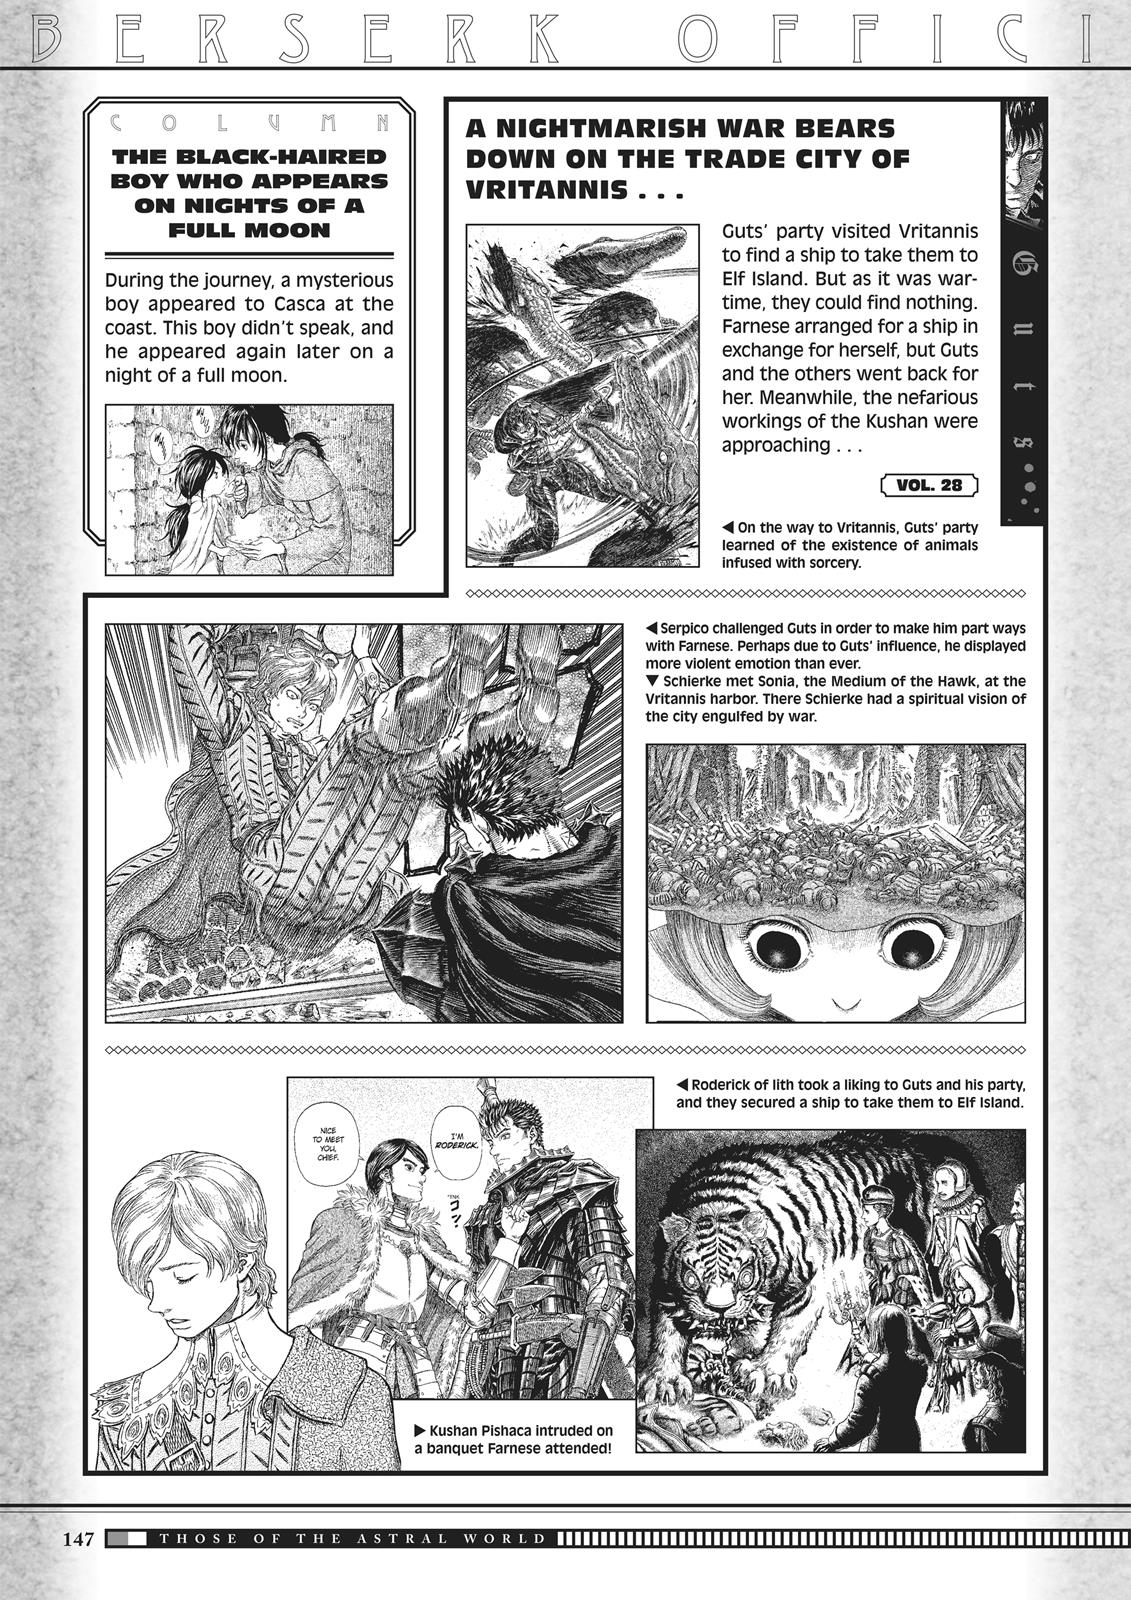 Berserk Manga Chapter 350.5 image 145